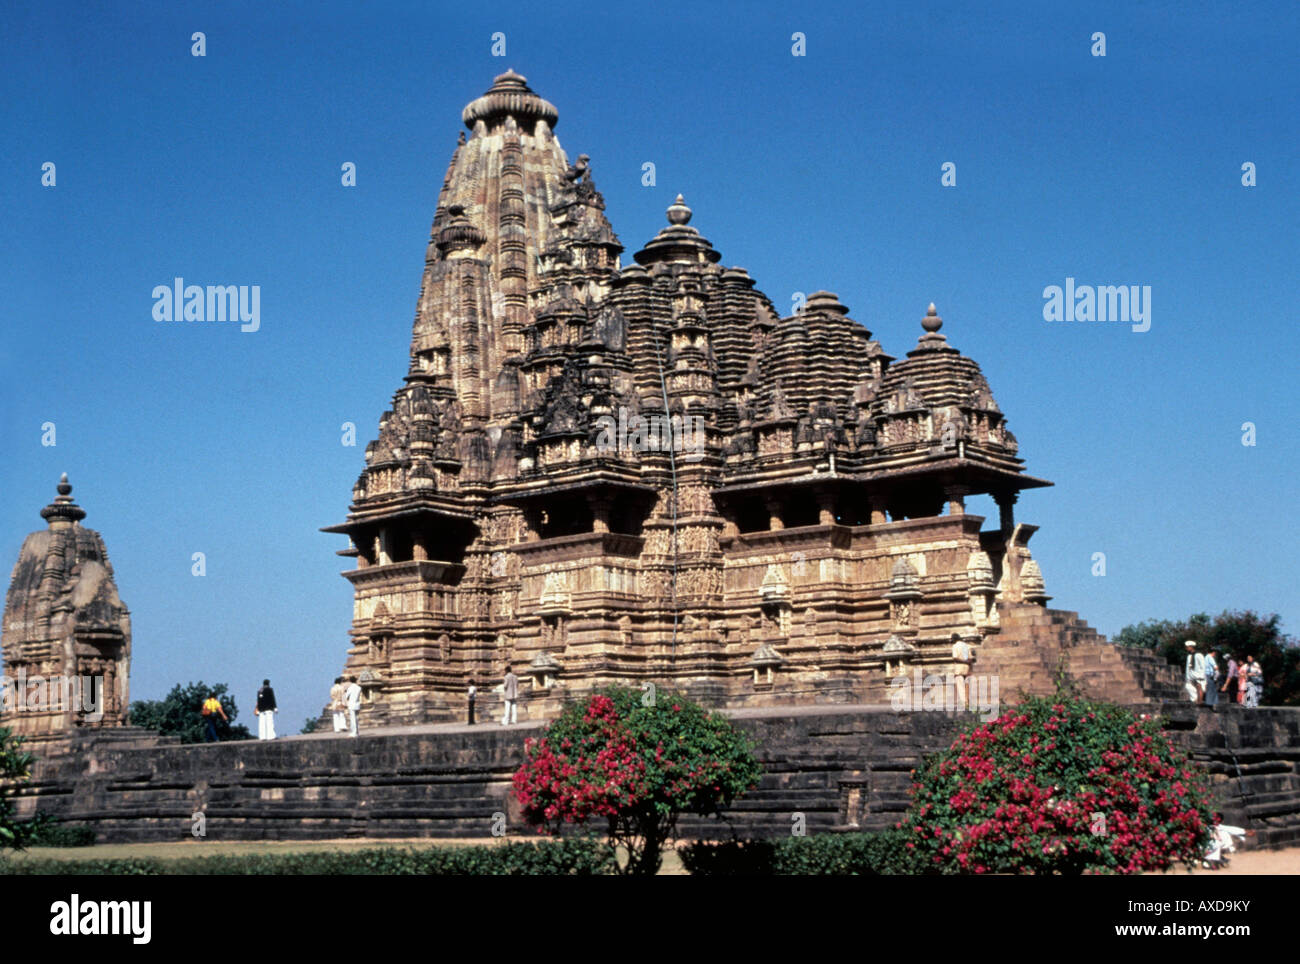 Khajuraho (Inde) temple Vishvanath vue depuis le sud-est de l'an 1000 le Madhya Pradesh Inde Banque D'Images